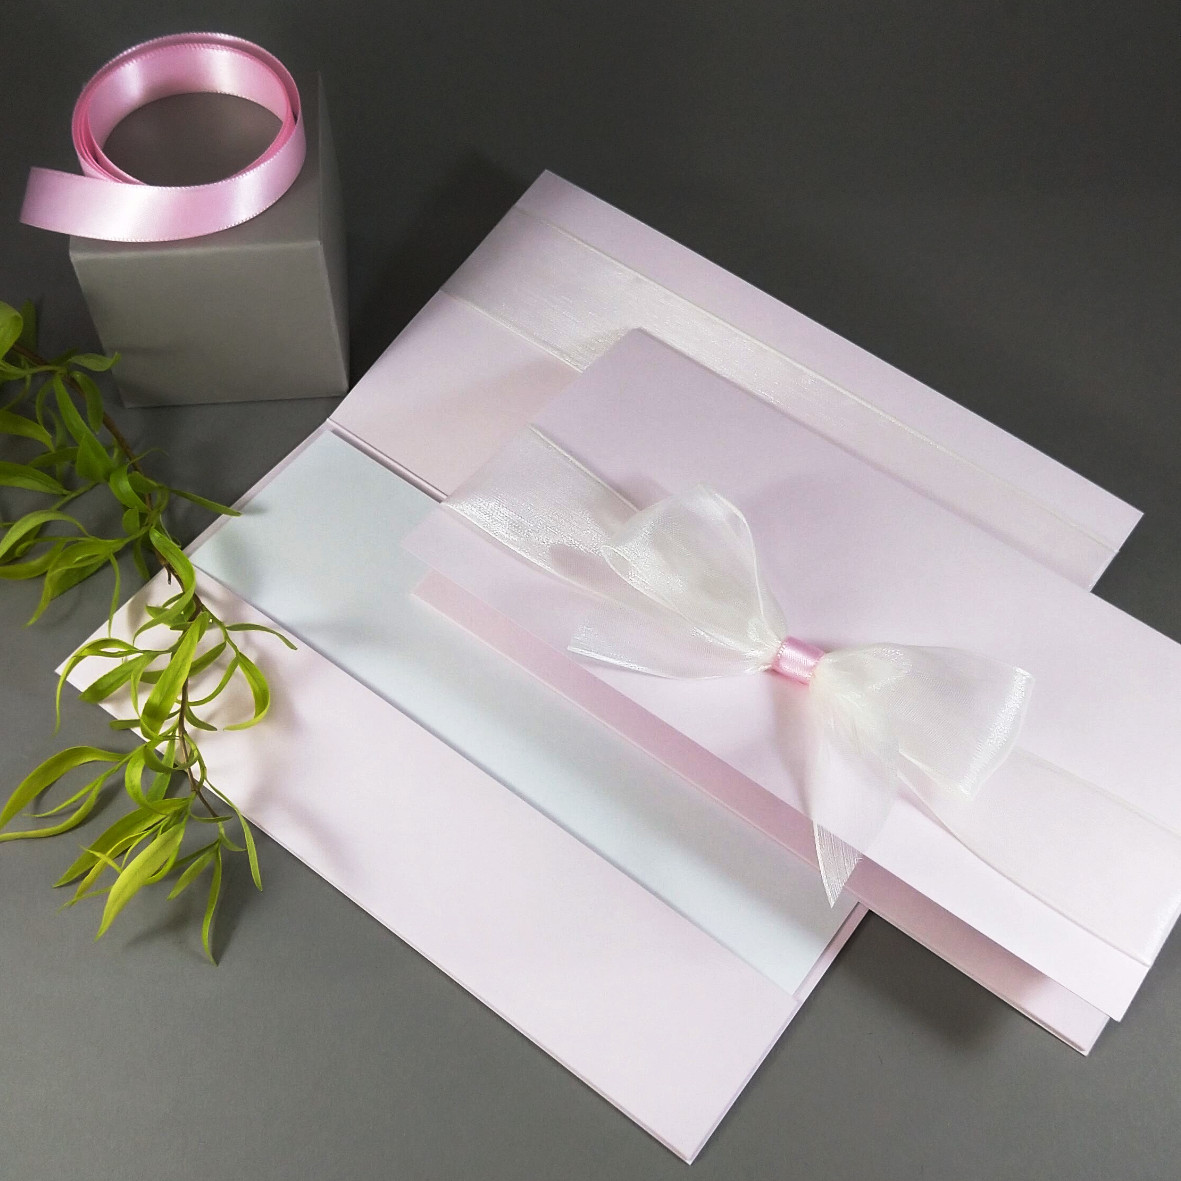 Dárková kapsa DL formátu z matného, mírně strukturovaného papíru světle růžové barvy, s aplikací z široké monofilové stuhy, celkový rozměr 206 × 106 mm.